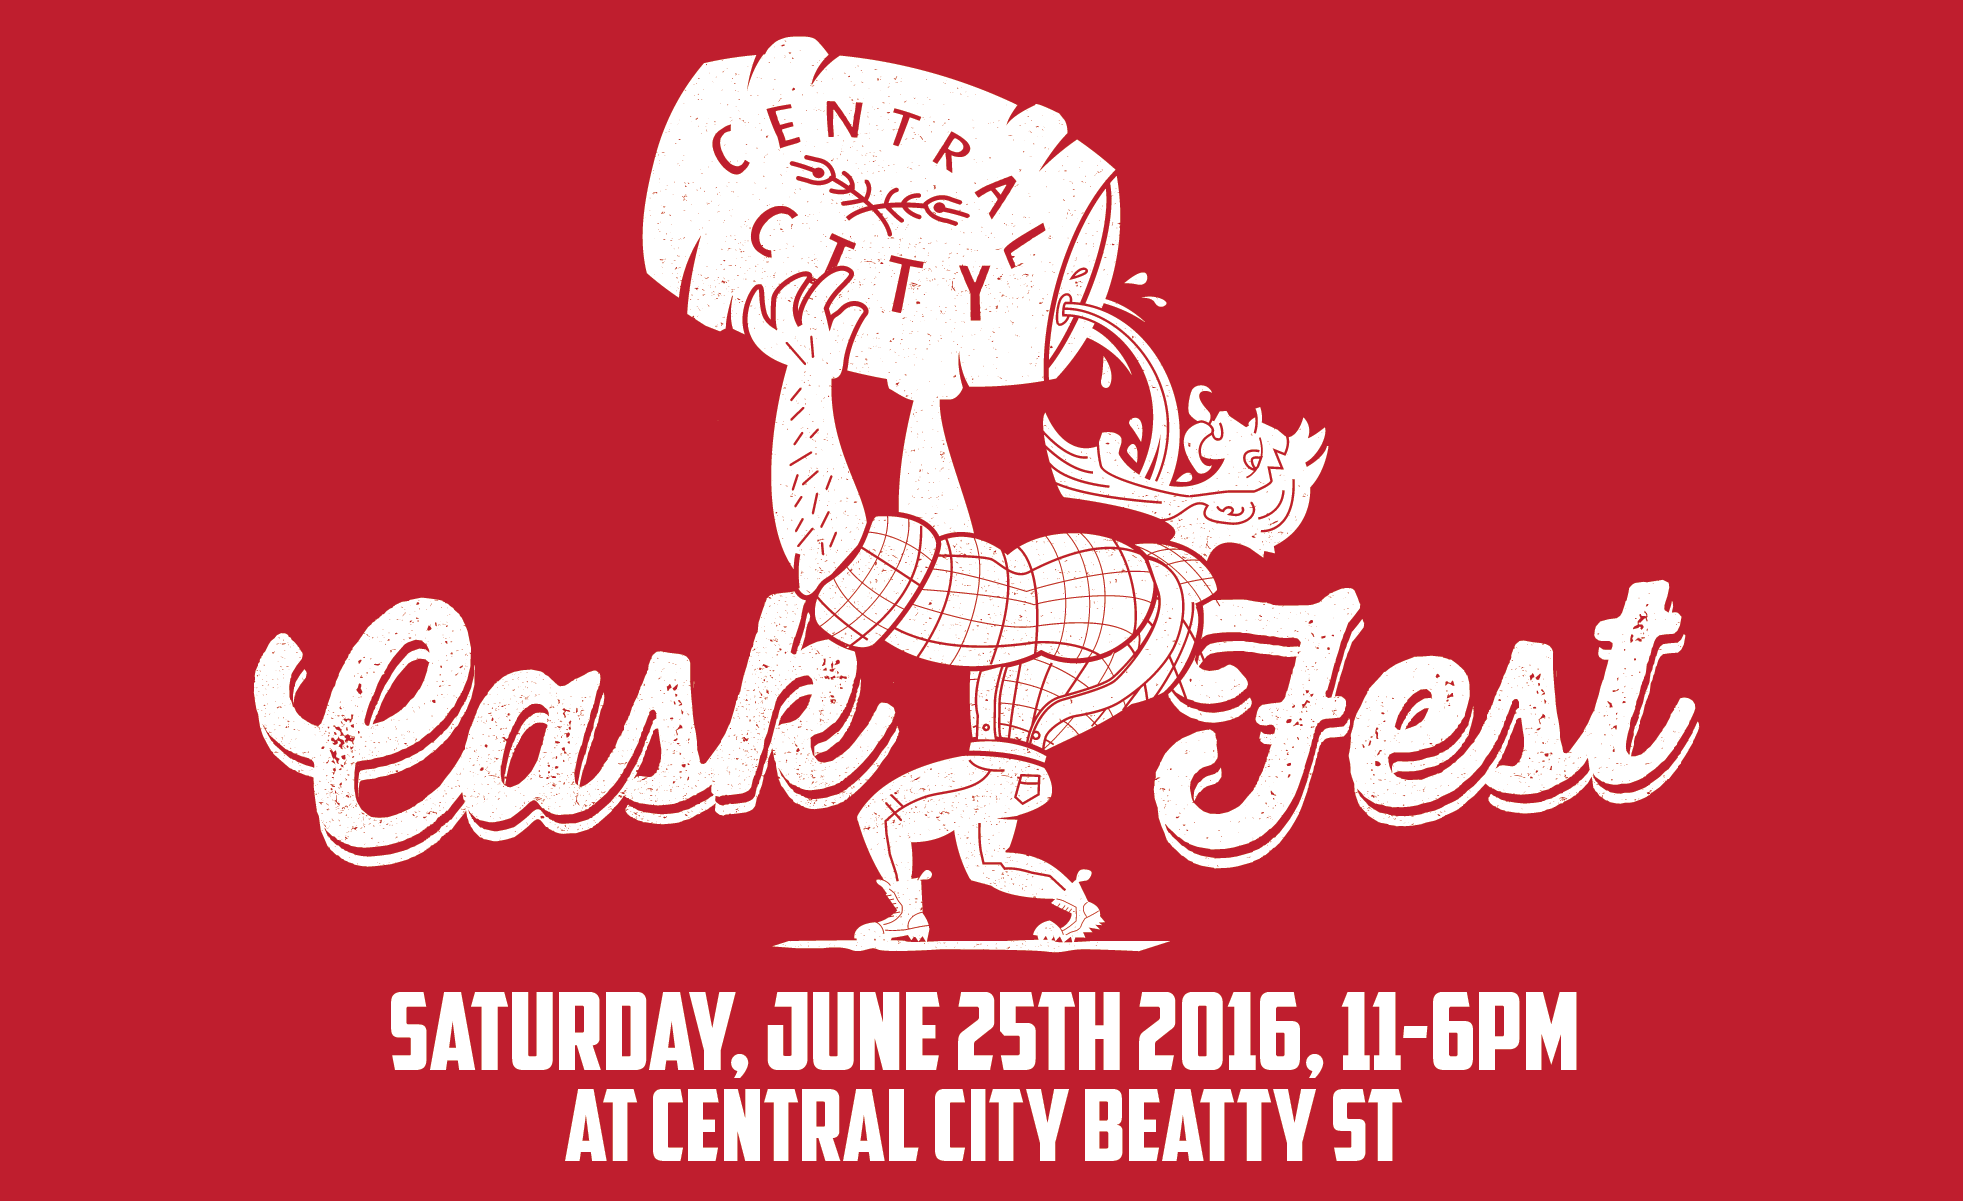 Central City Cask Fest